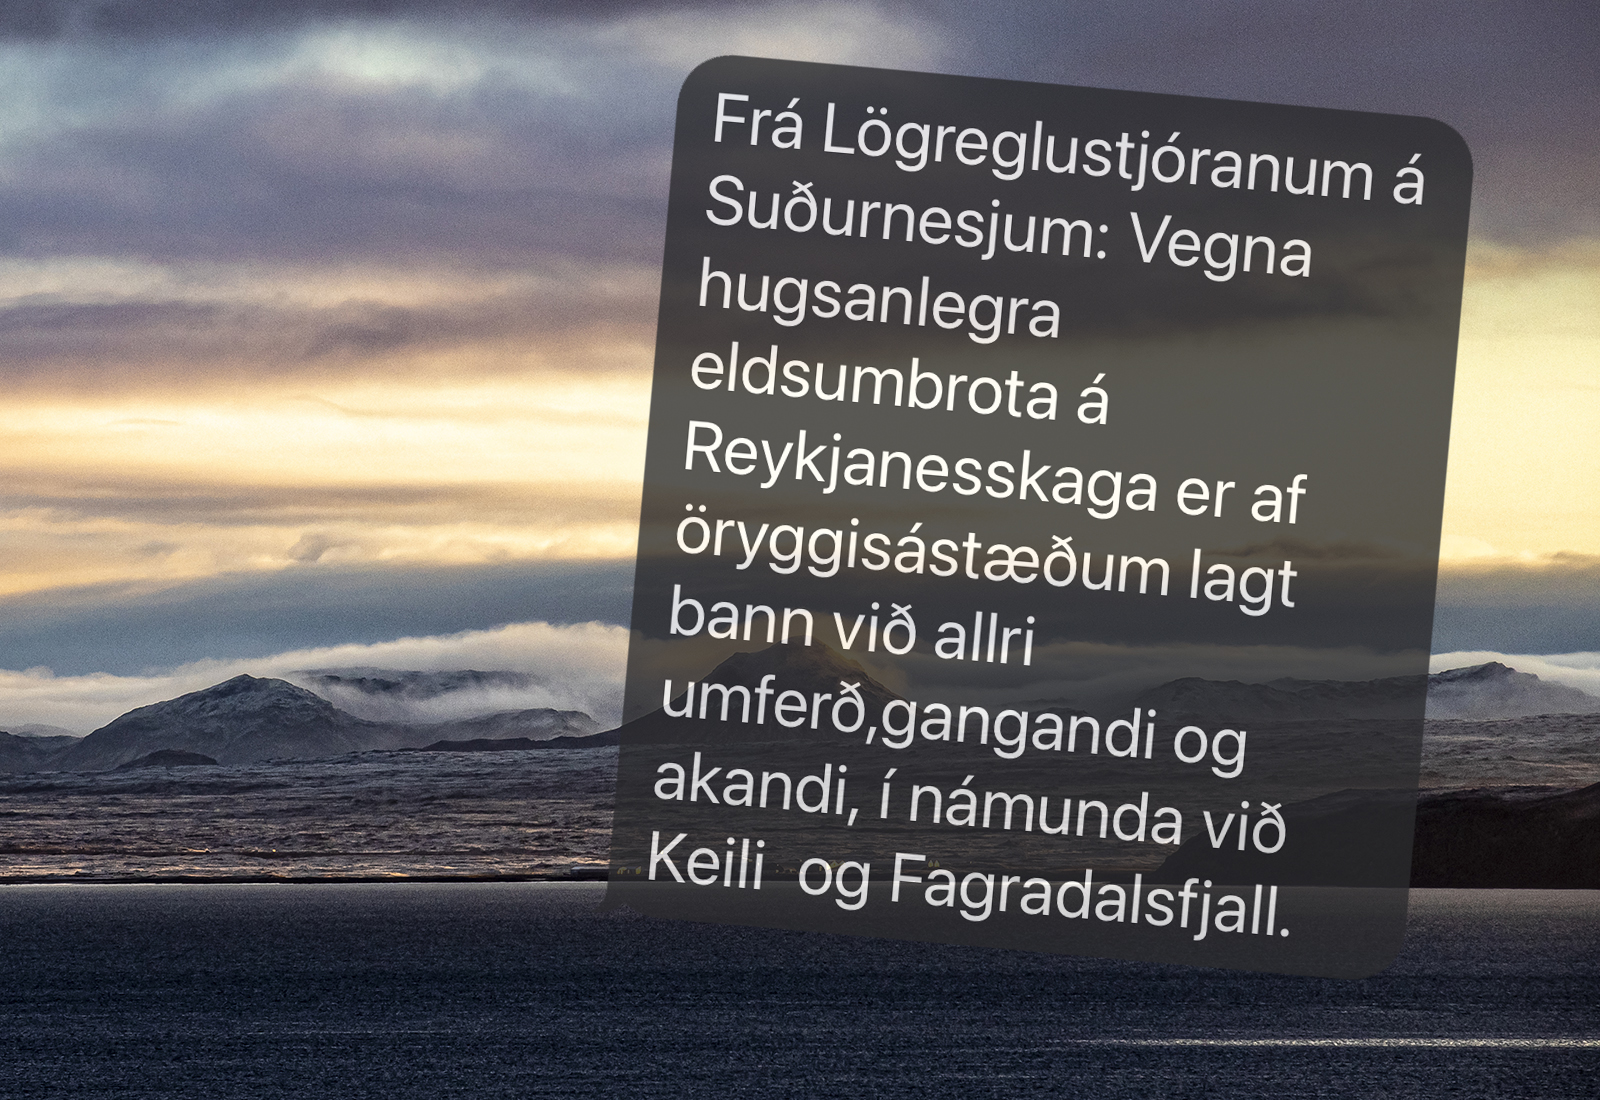 Banna alla umferð í námunda við Keili og Fagradalsfjall